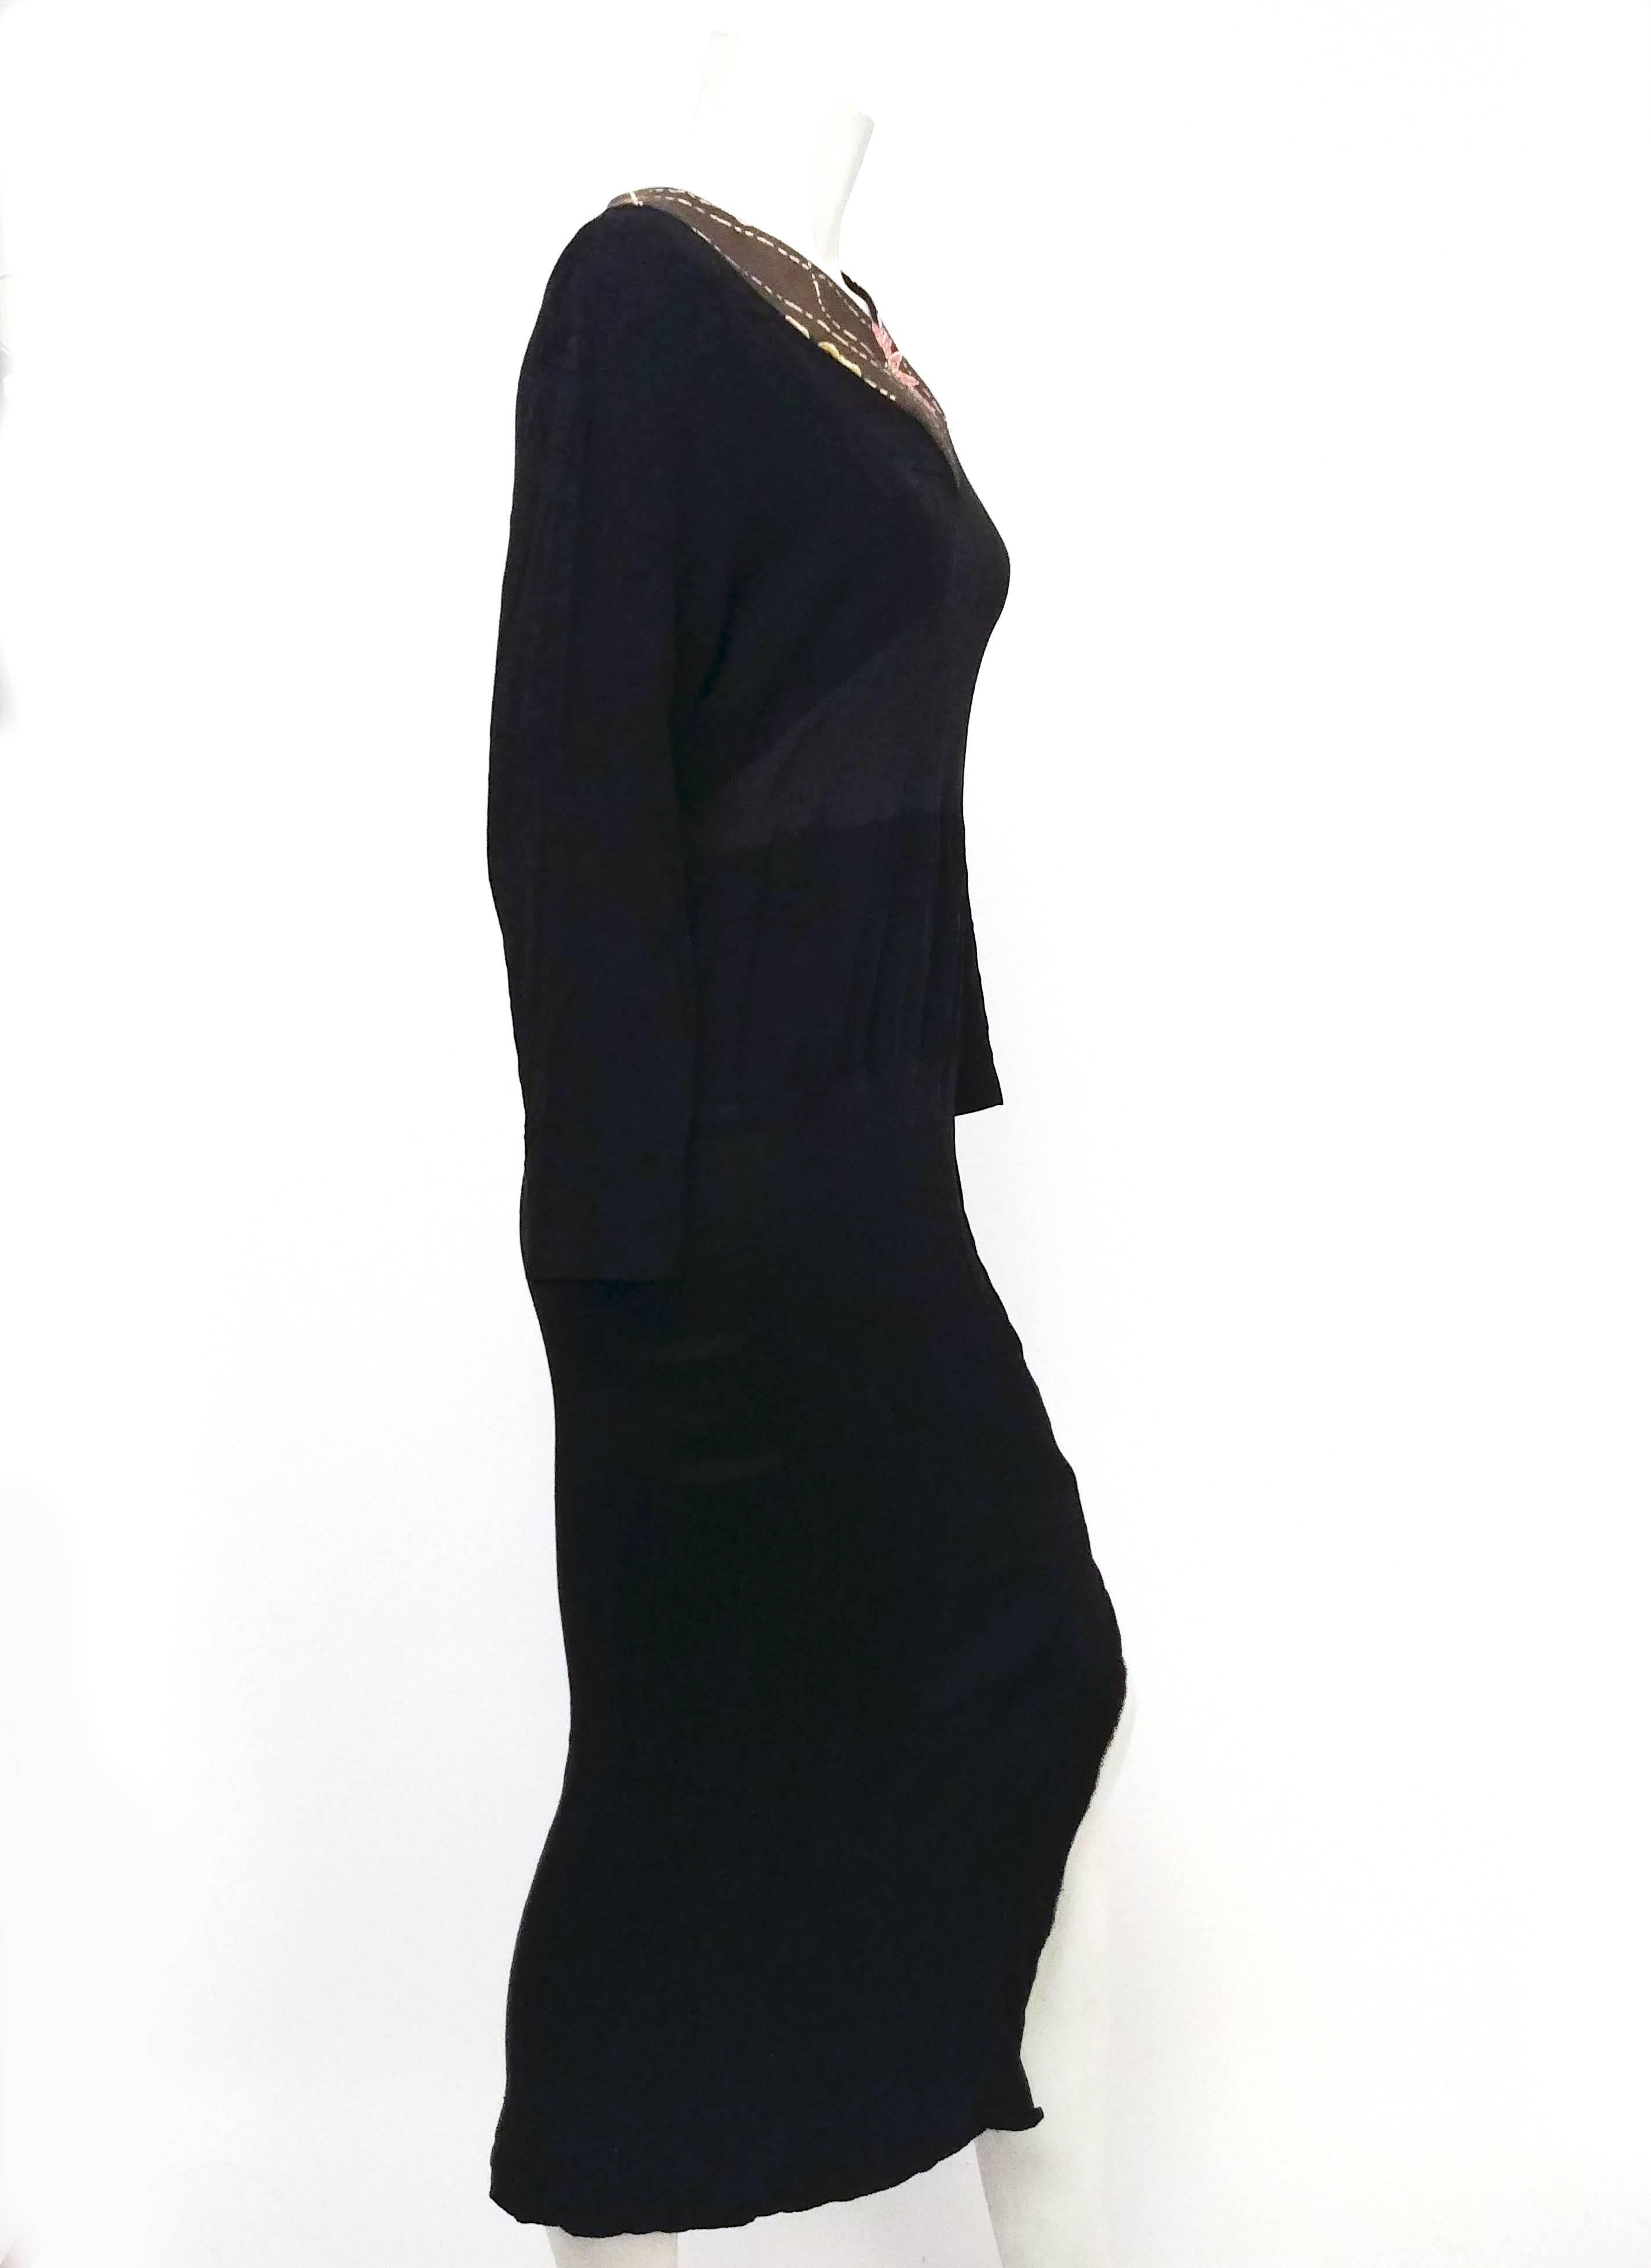 1980 Japanese Black Pleated Dress with Kimono Silk Trim. Plis serrés et tissu jacquard floral. Pas de fermeture, s'enfile par-dessus la tête. Légère élasticité due aux plis. Attache à la taille dans le dos. 